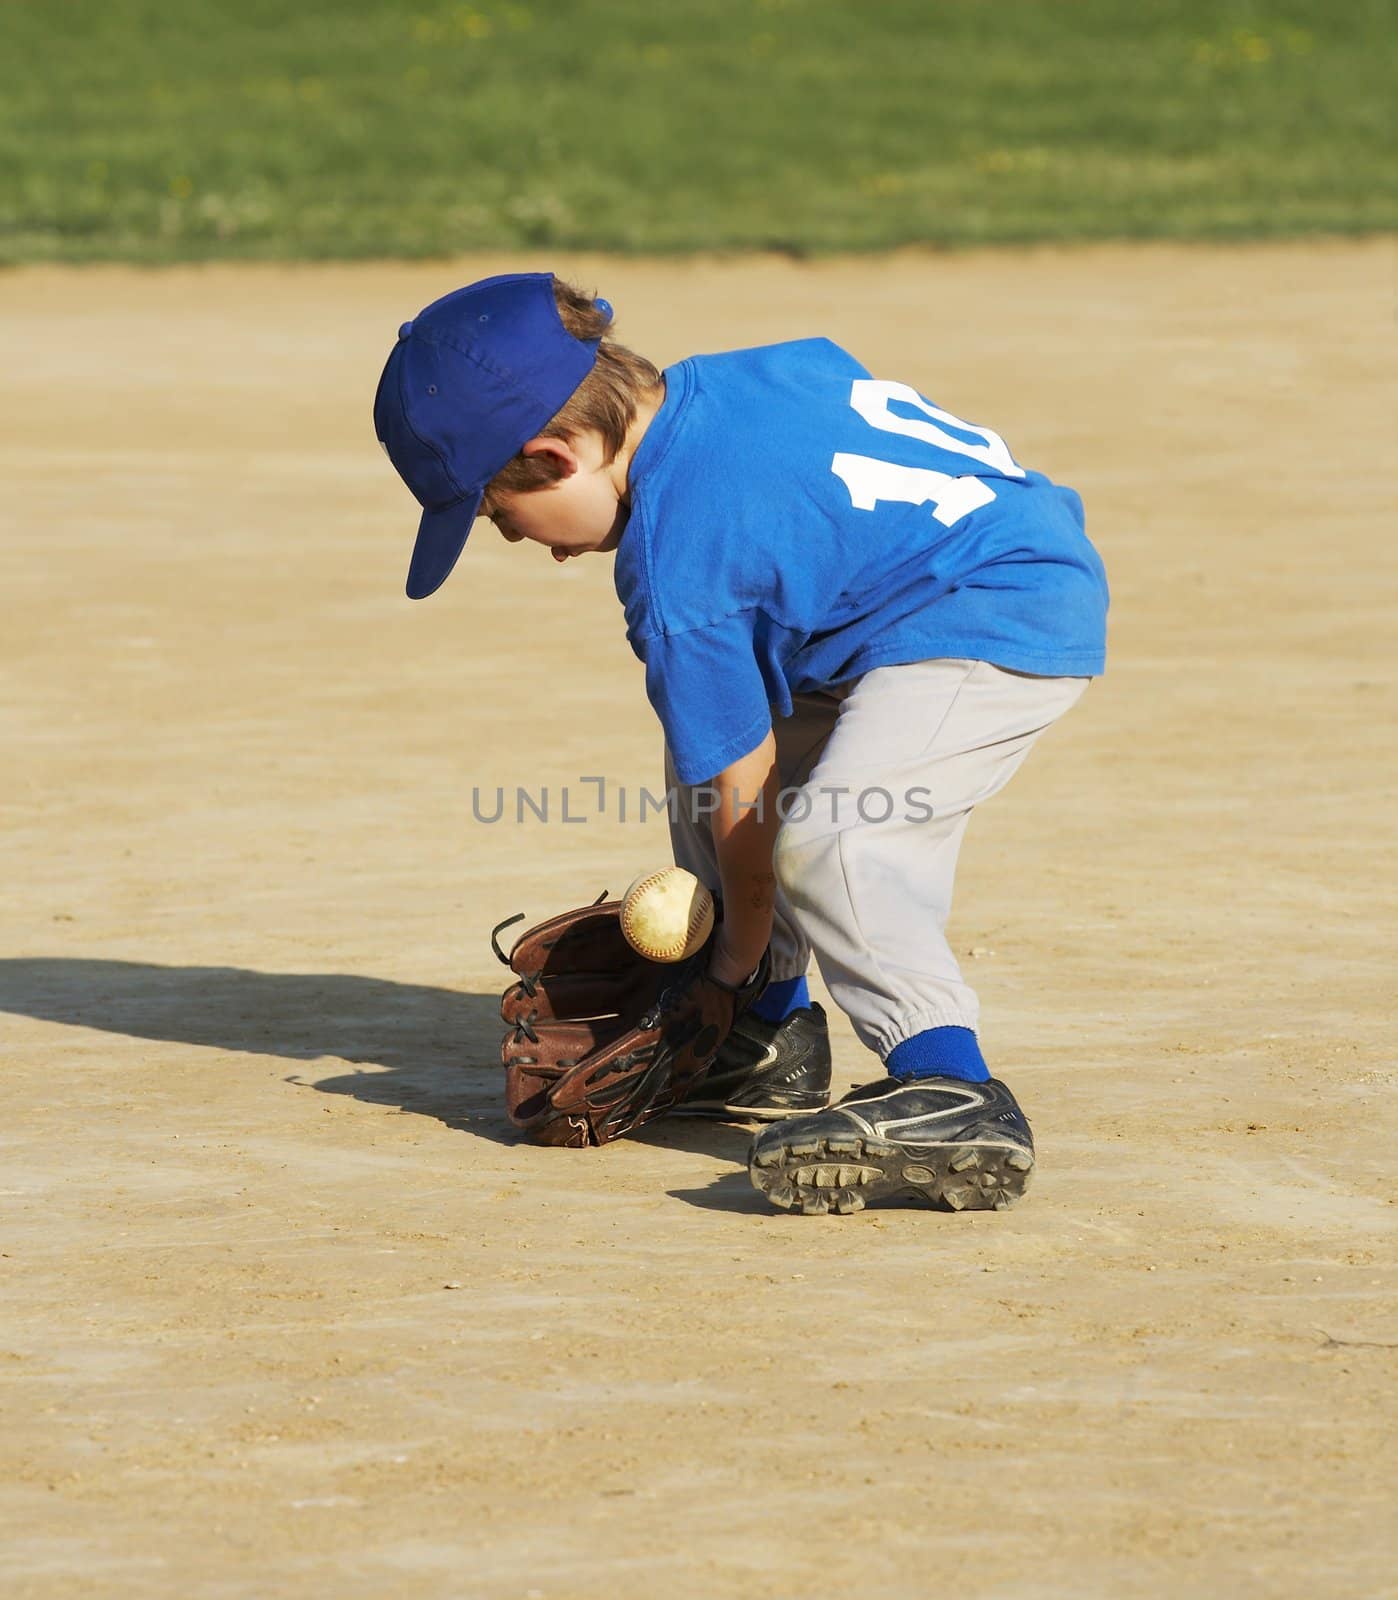 boy playing baseball